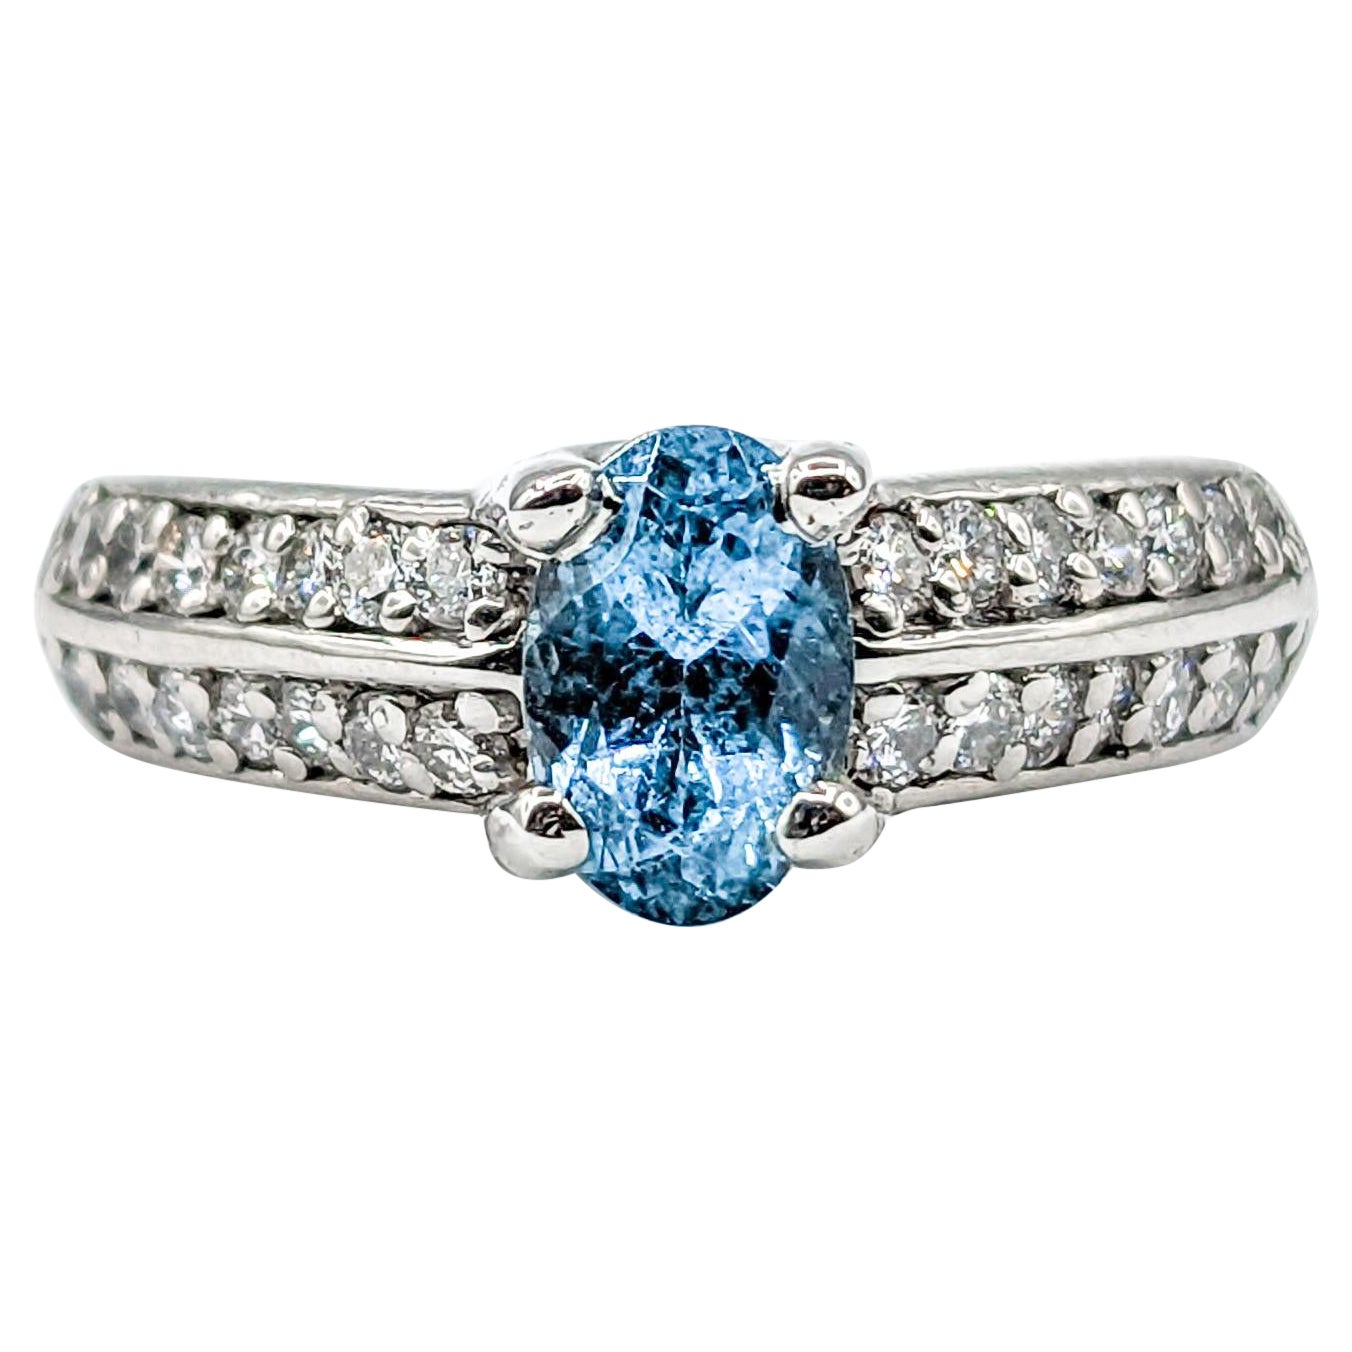 Aquamarine & Diamond Ring in Platinum